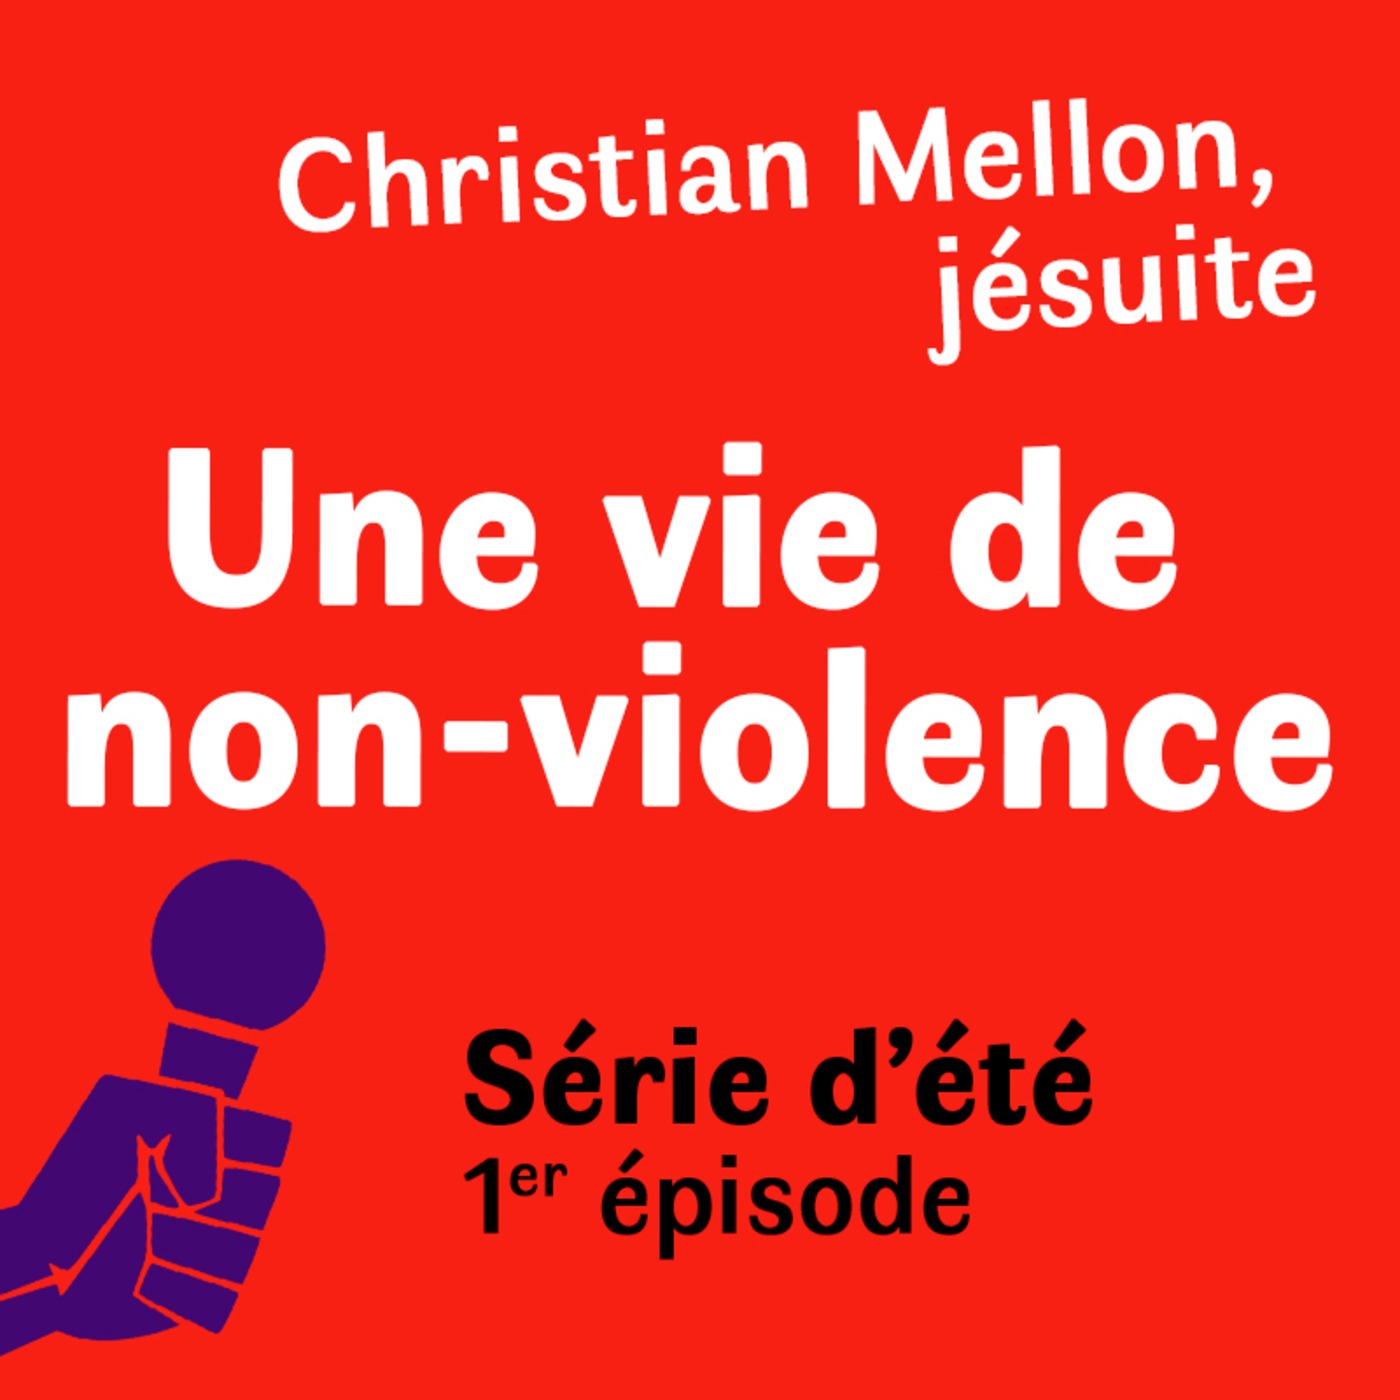 Série d'été : Christian Mellon, jésuite, une vie de non violence. Episode 1 : On entre en militance